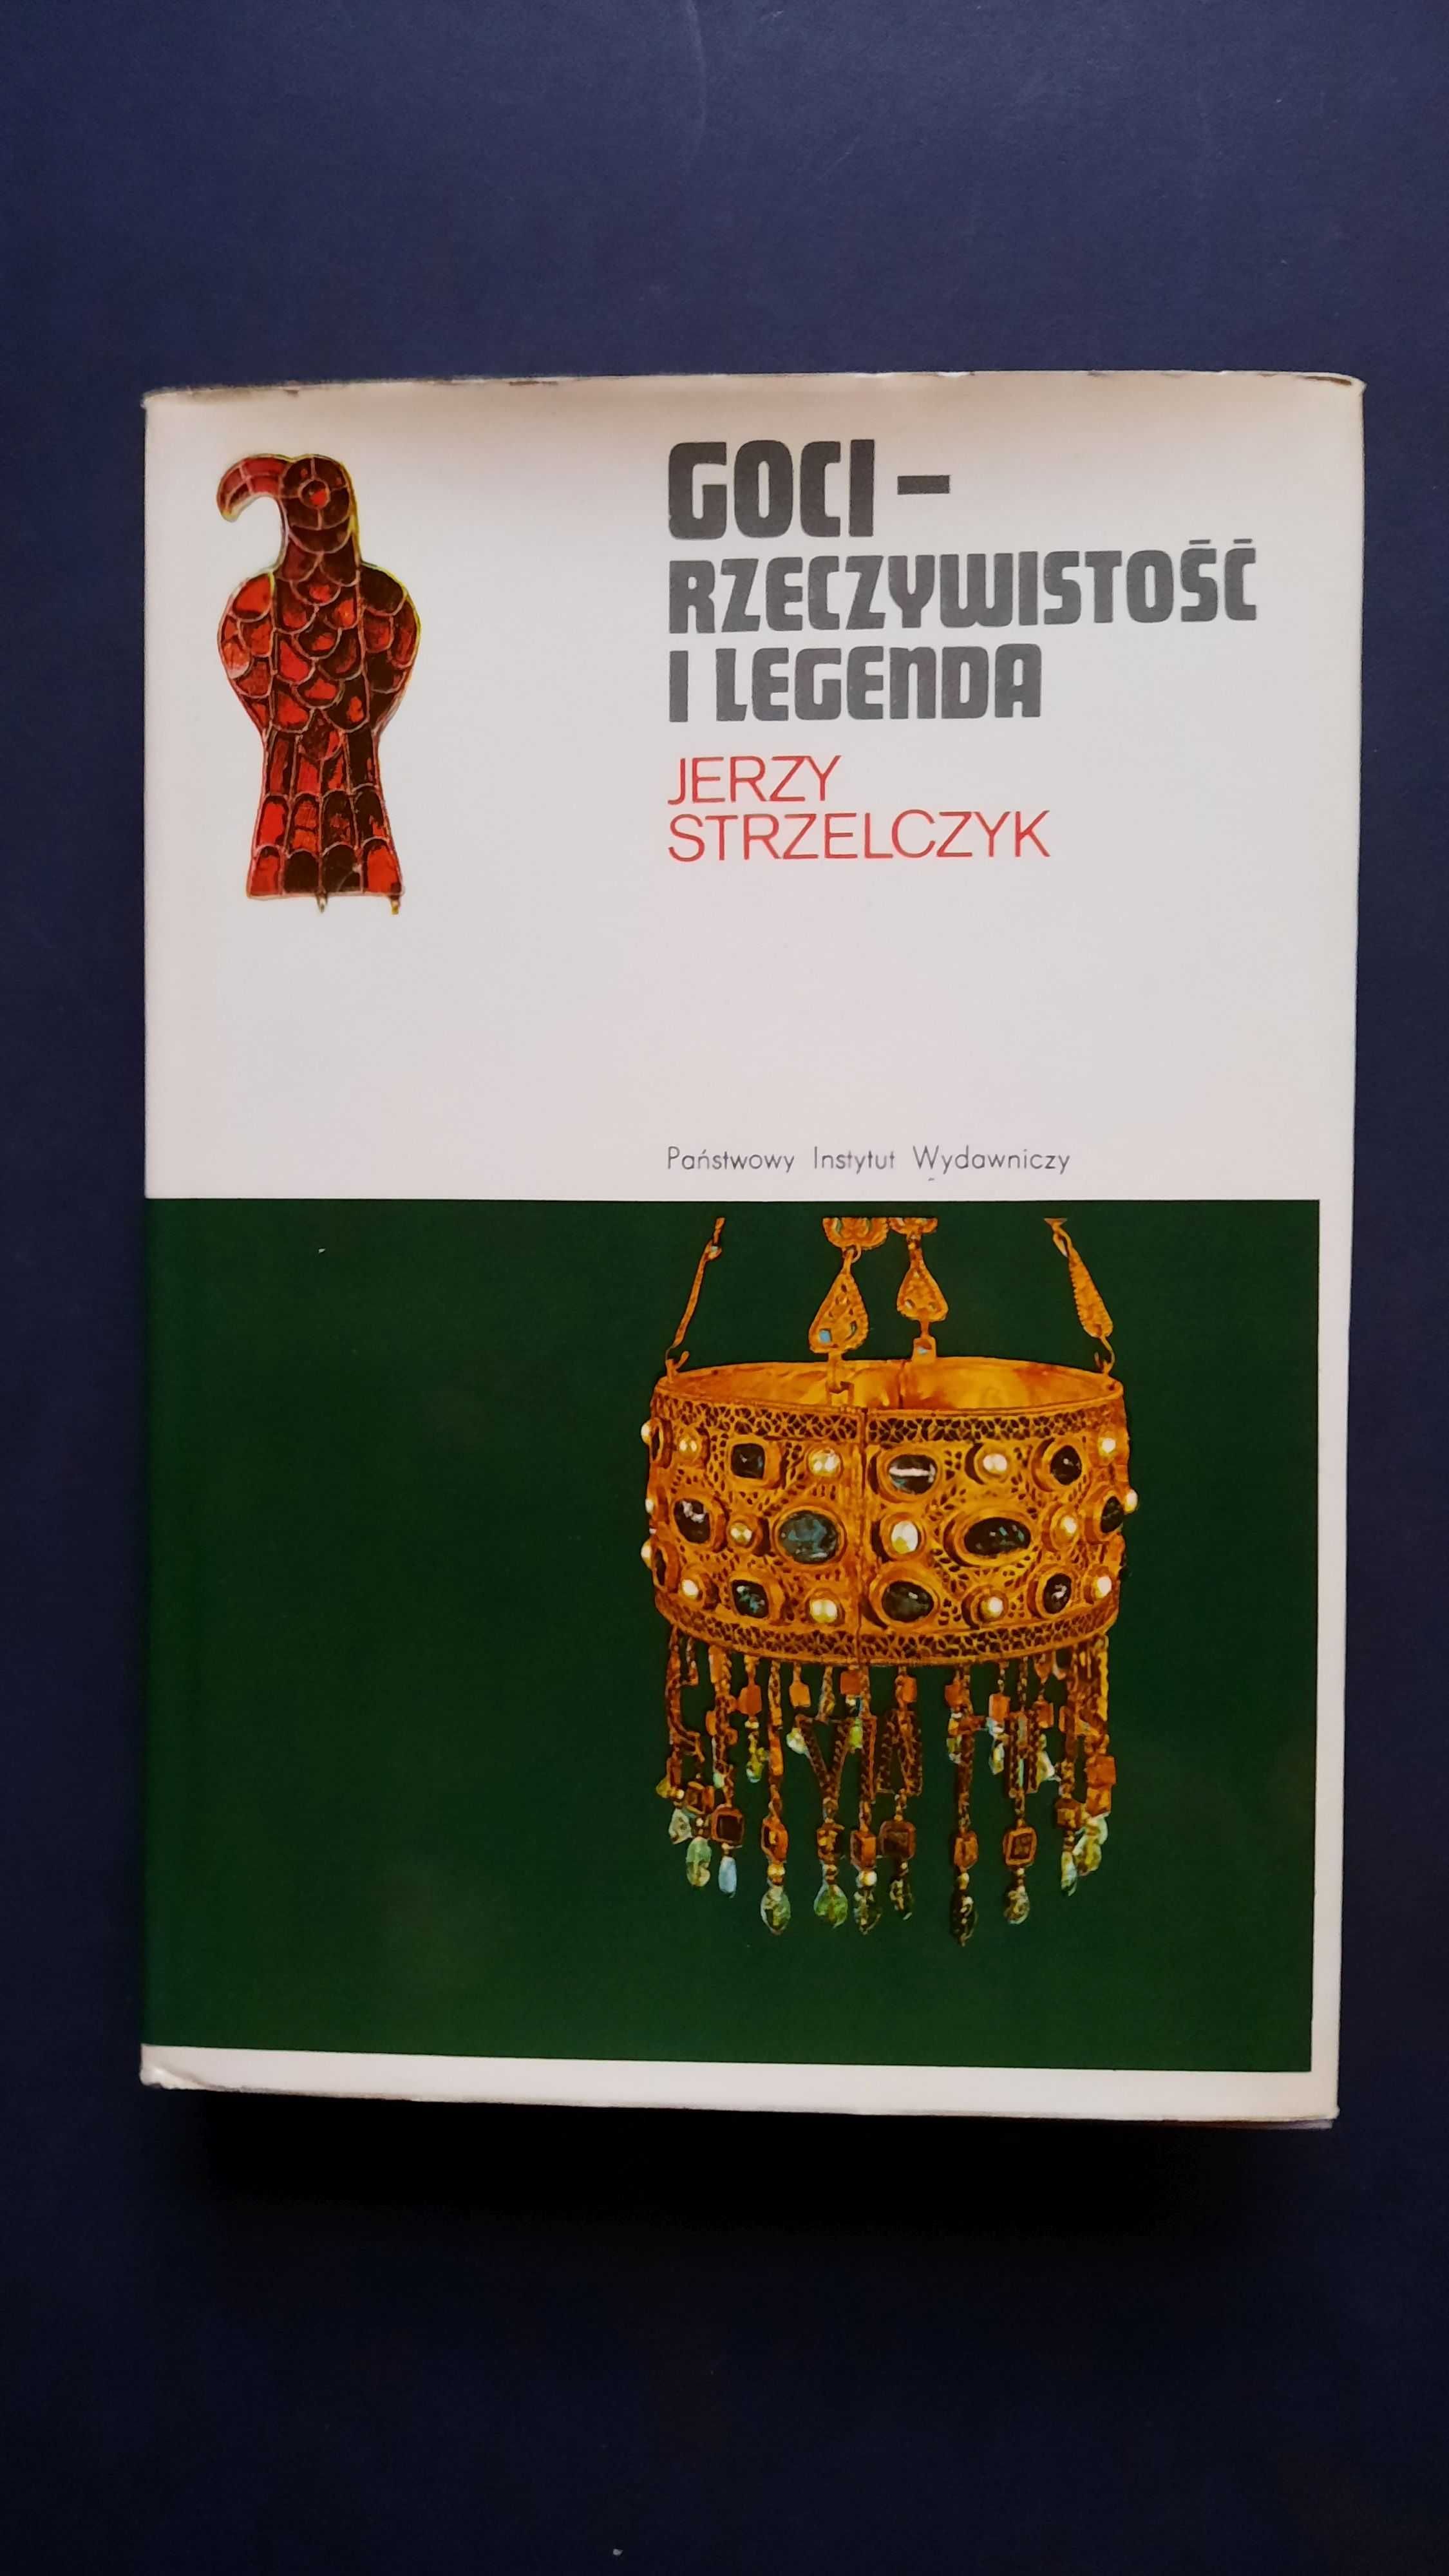 Goci – rzeczywistość i legenda, Jerzy Strzelczyk